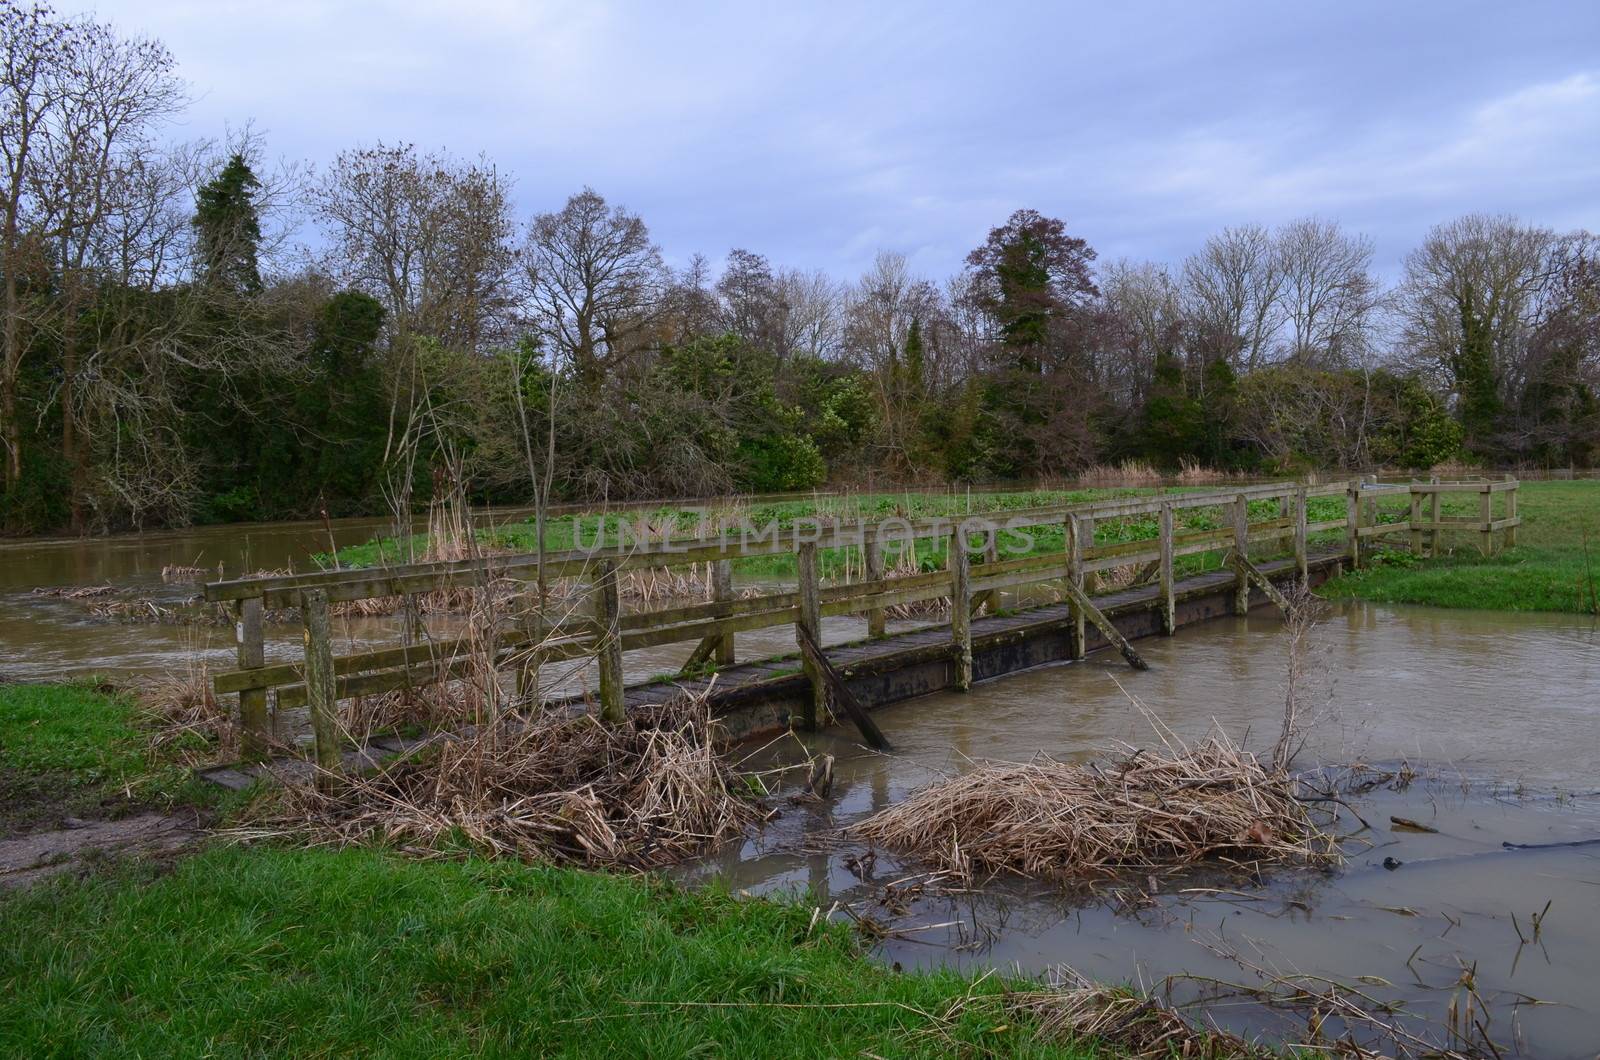 A rustic wooden footbridge crossing a swollen river.